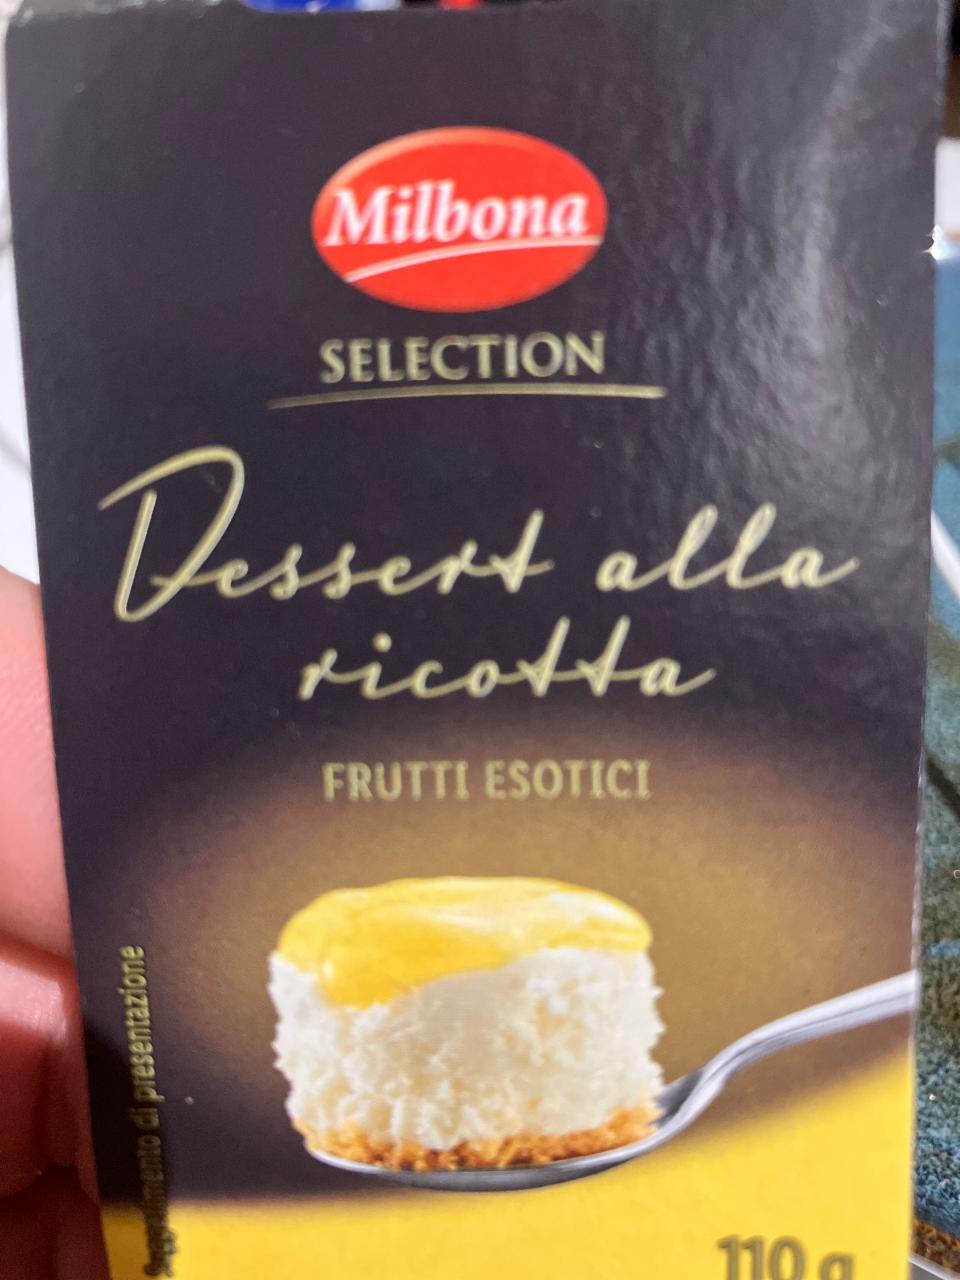 Fotografie - Dessert alla ricotta Frutti esotici Milbona